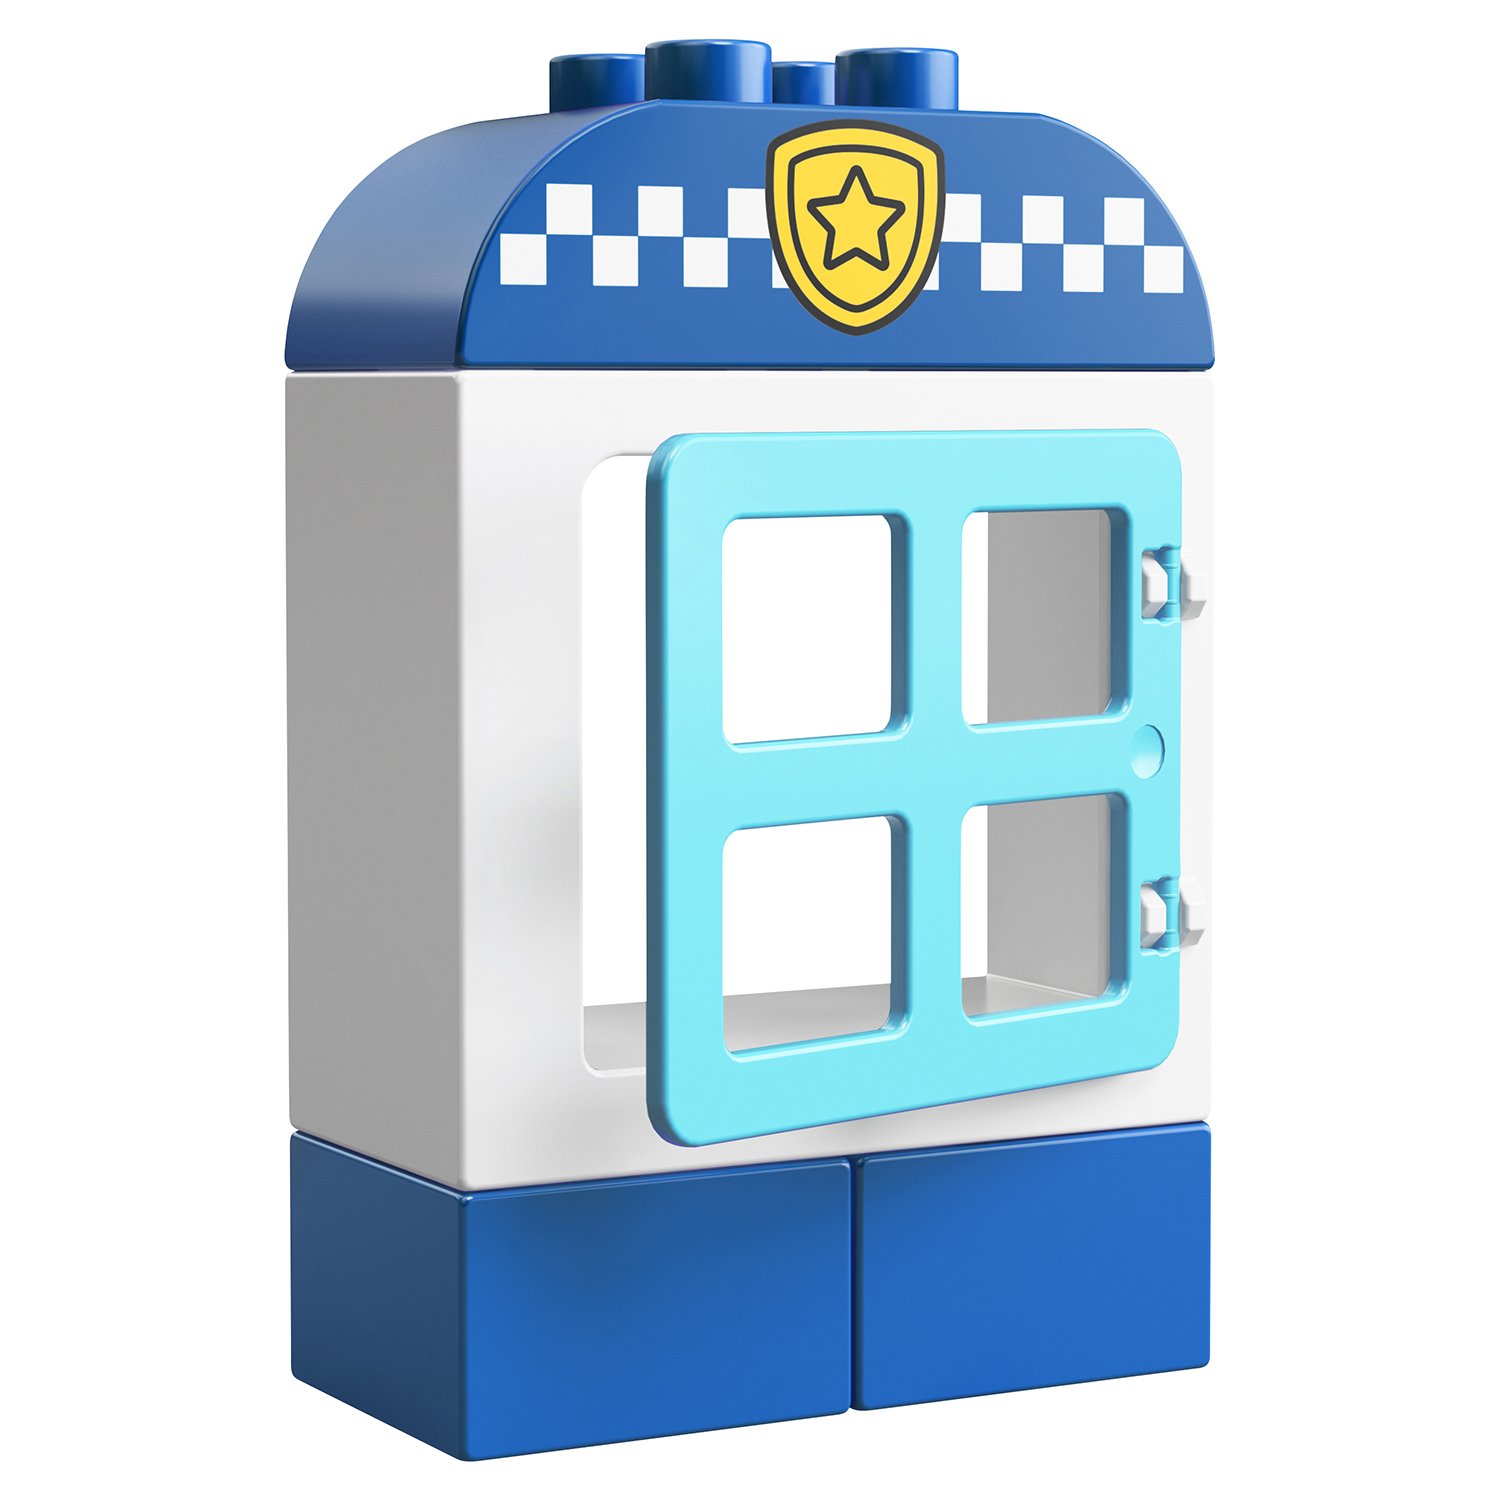 Lego Duplo 10900 Полицейский мотоцикл